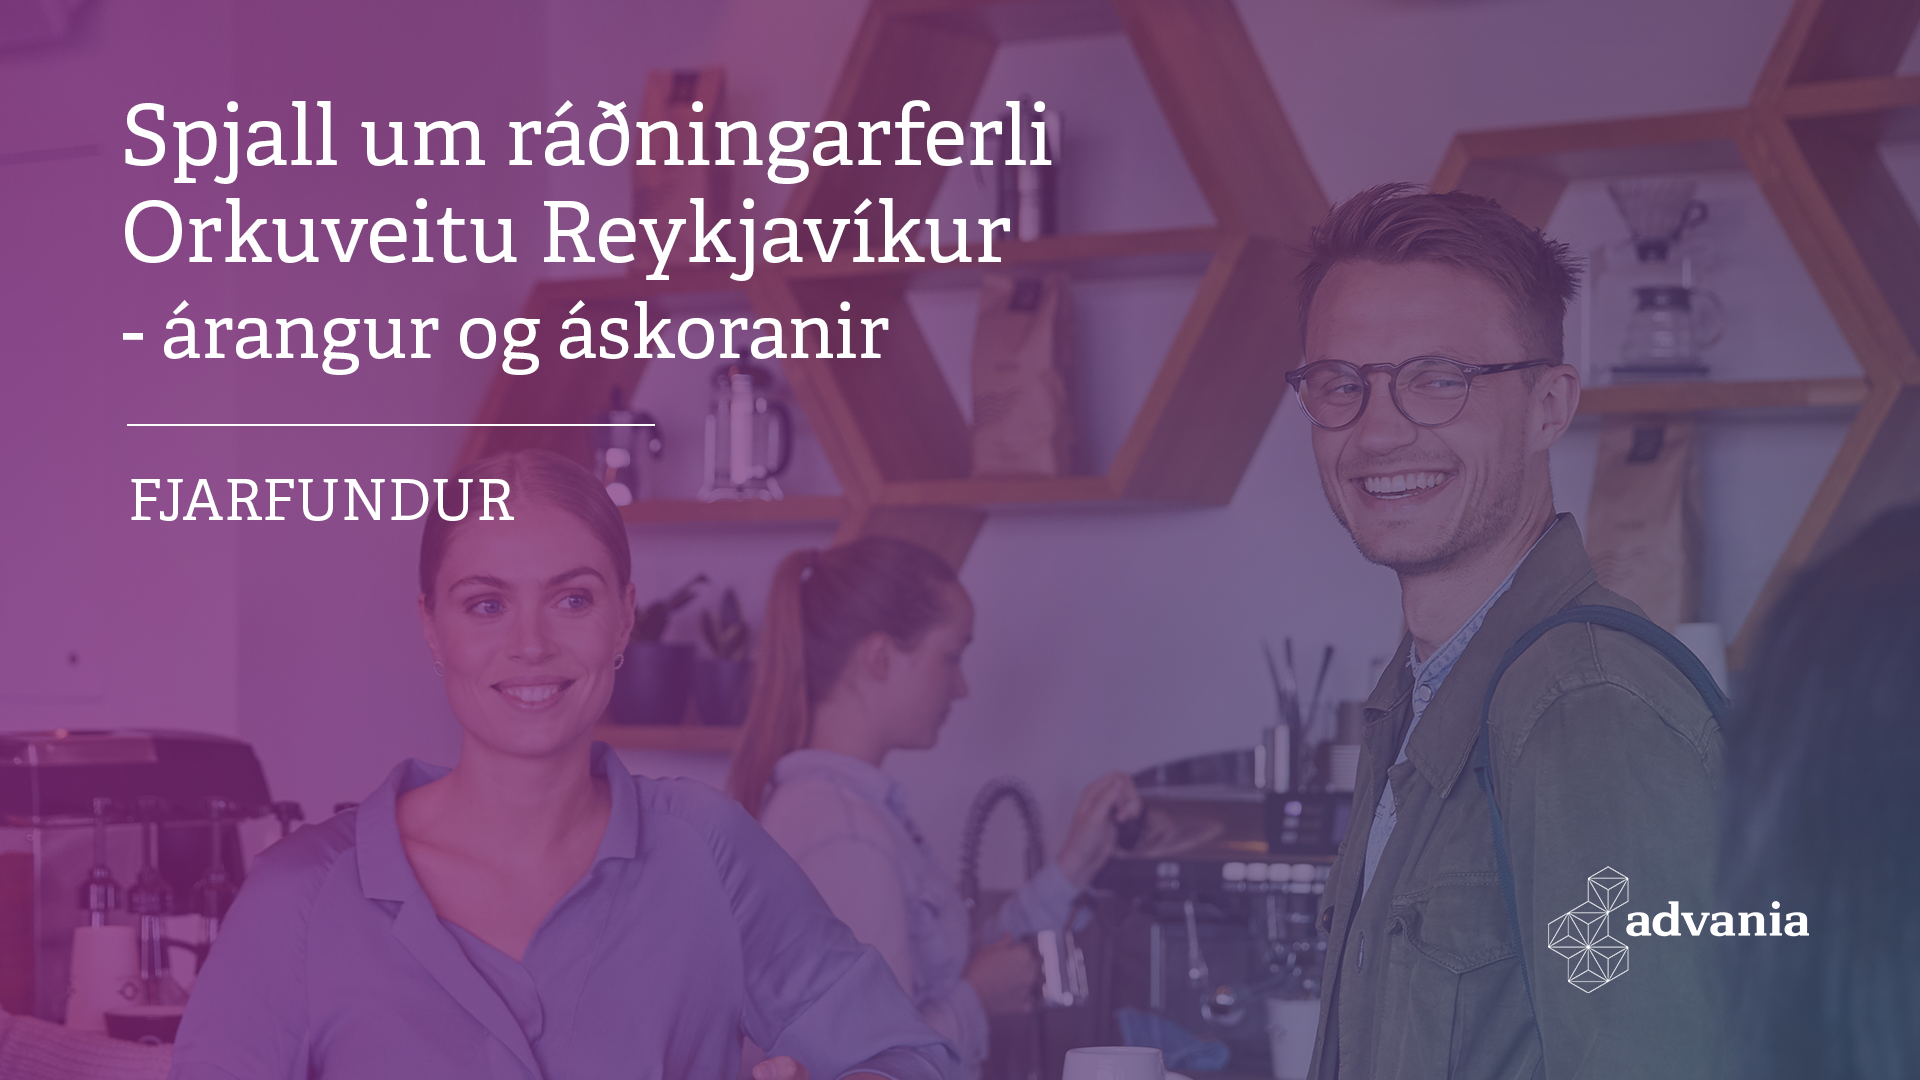 Image for event - Spjall um ráðningarferli Orkuveitu Reykjavíkur - árangur og áskoranir